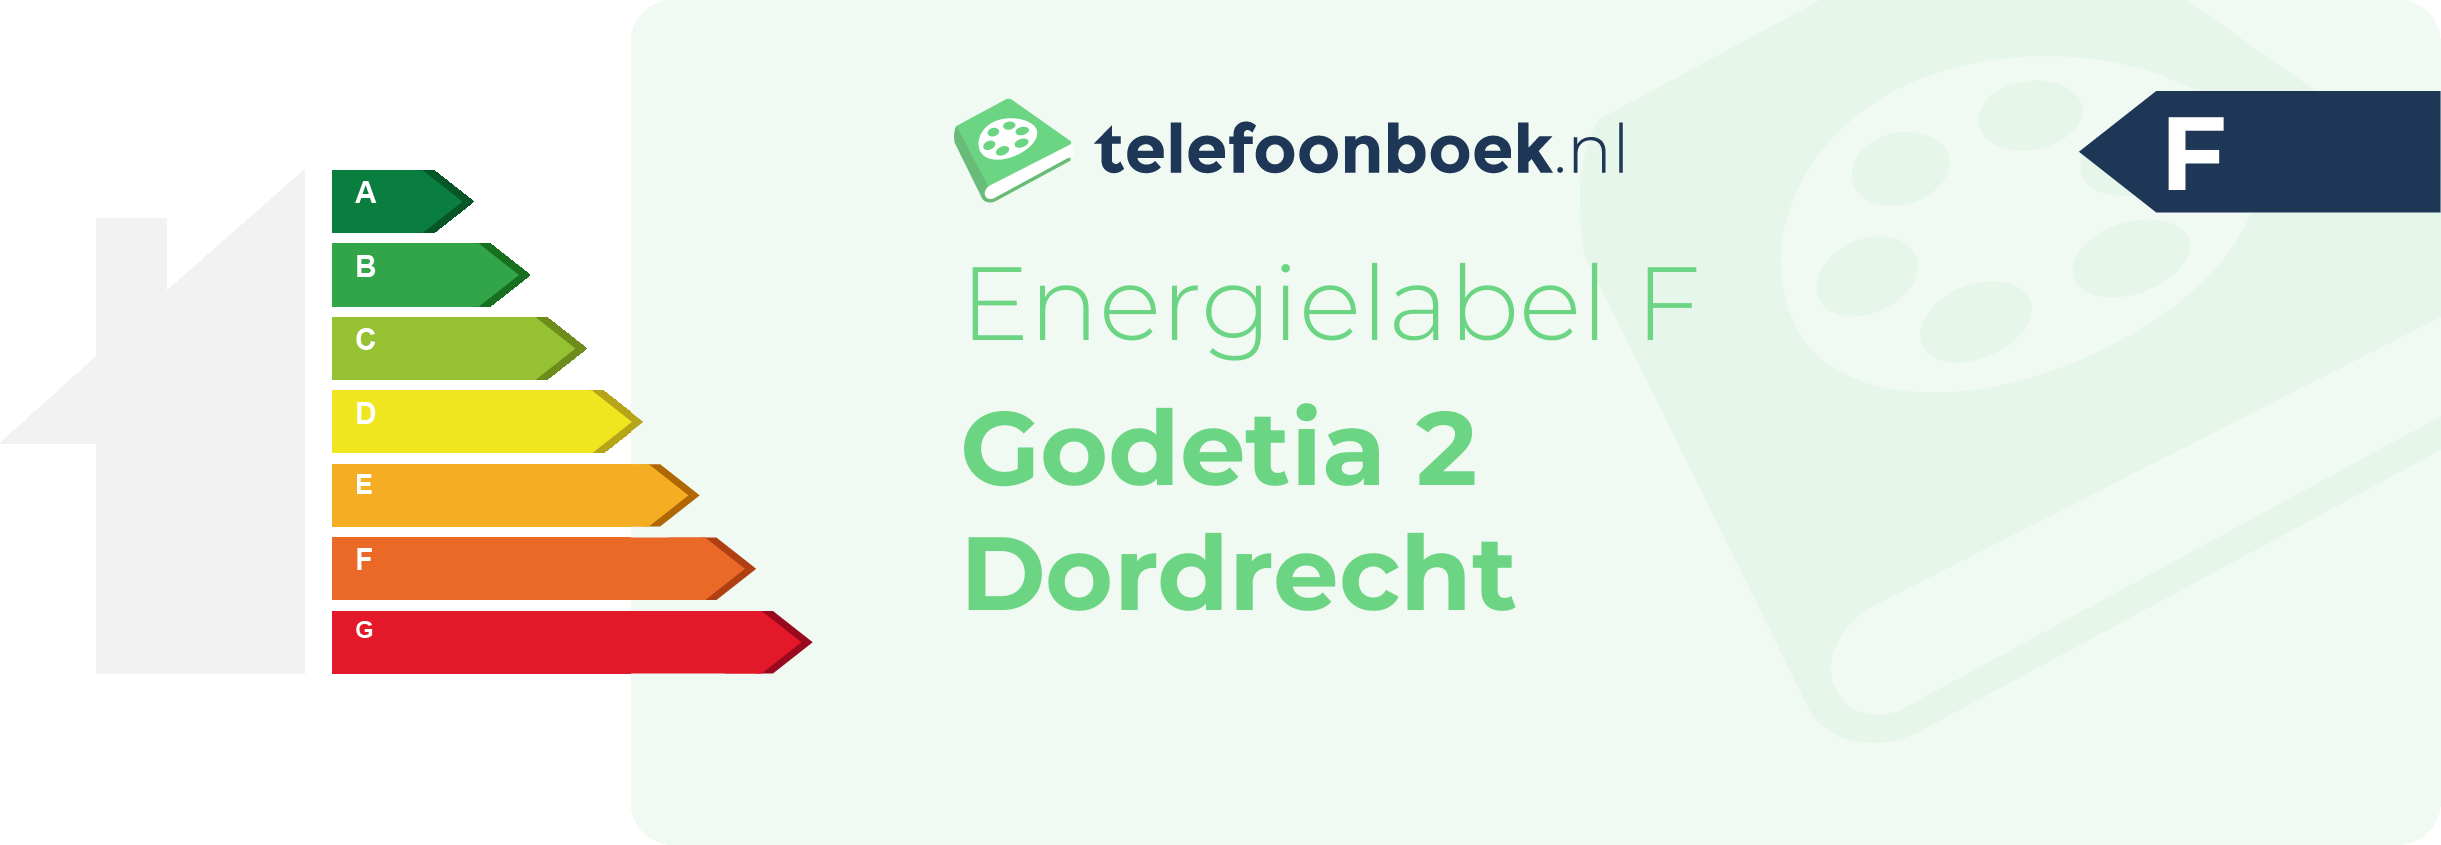 Energielabel Godetia 2 Dordrecht